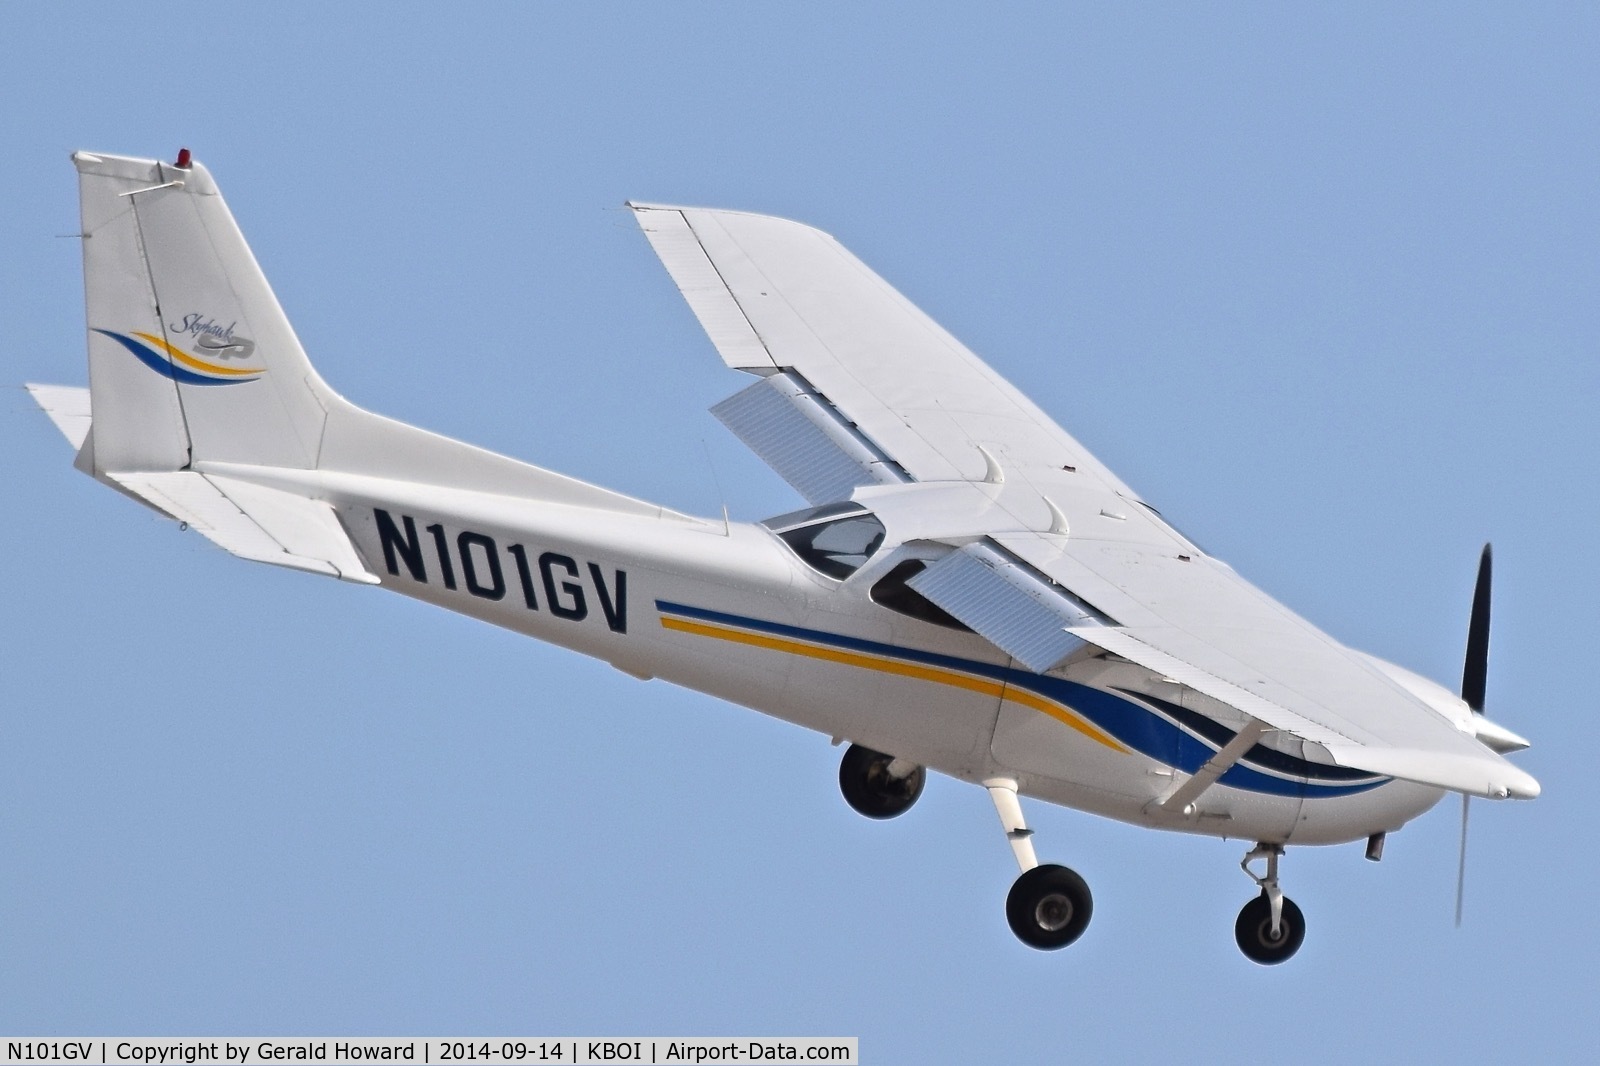 N101GV, 1998 Cessna 172S C/N 172S8021, Turning on final for RWY 10R.